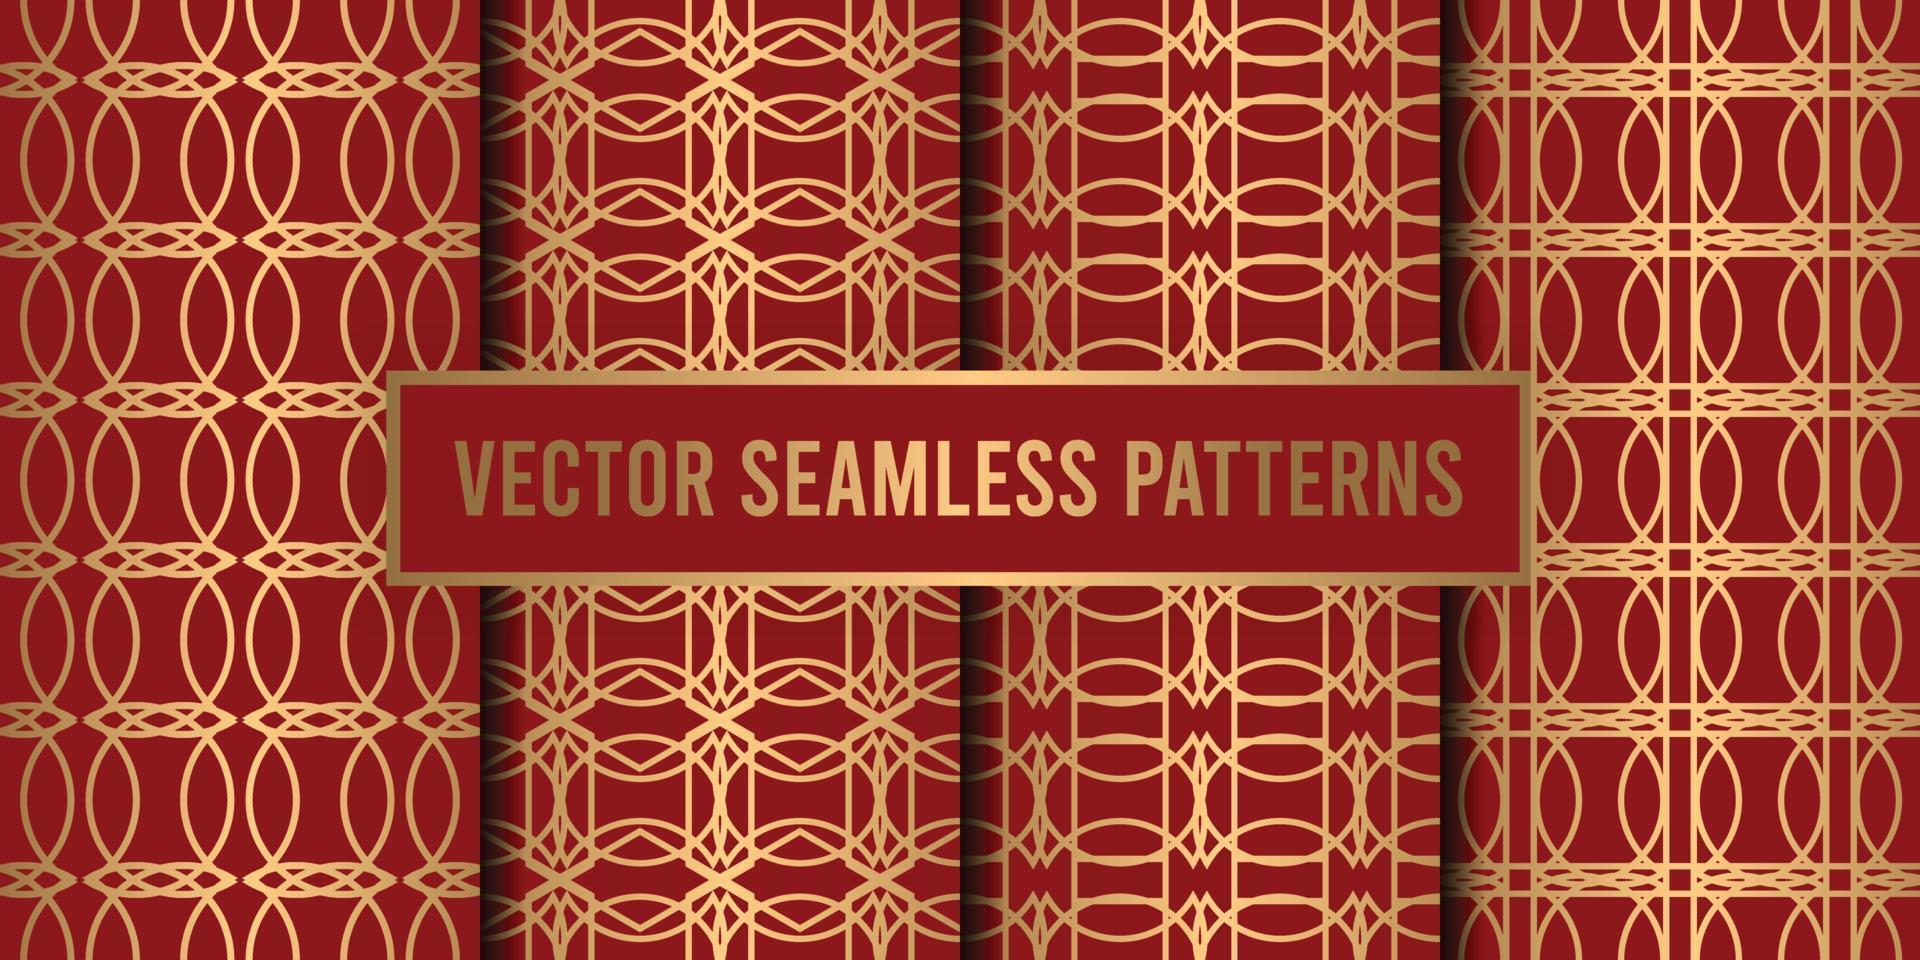 geometrische naadloze patroonachtergrond vector